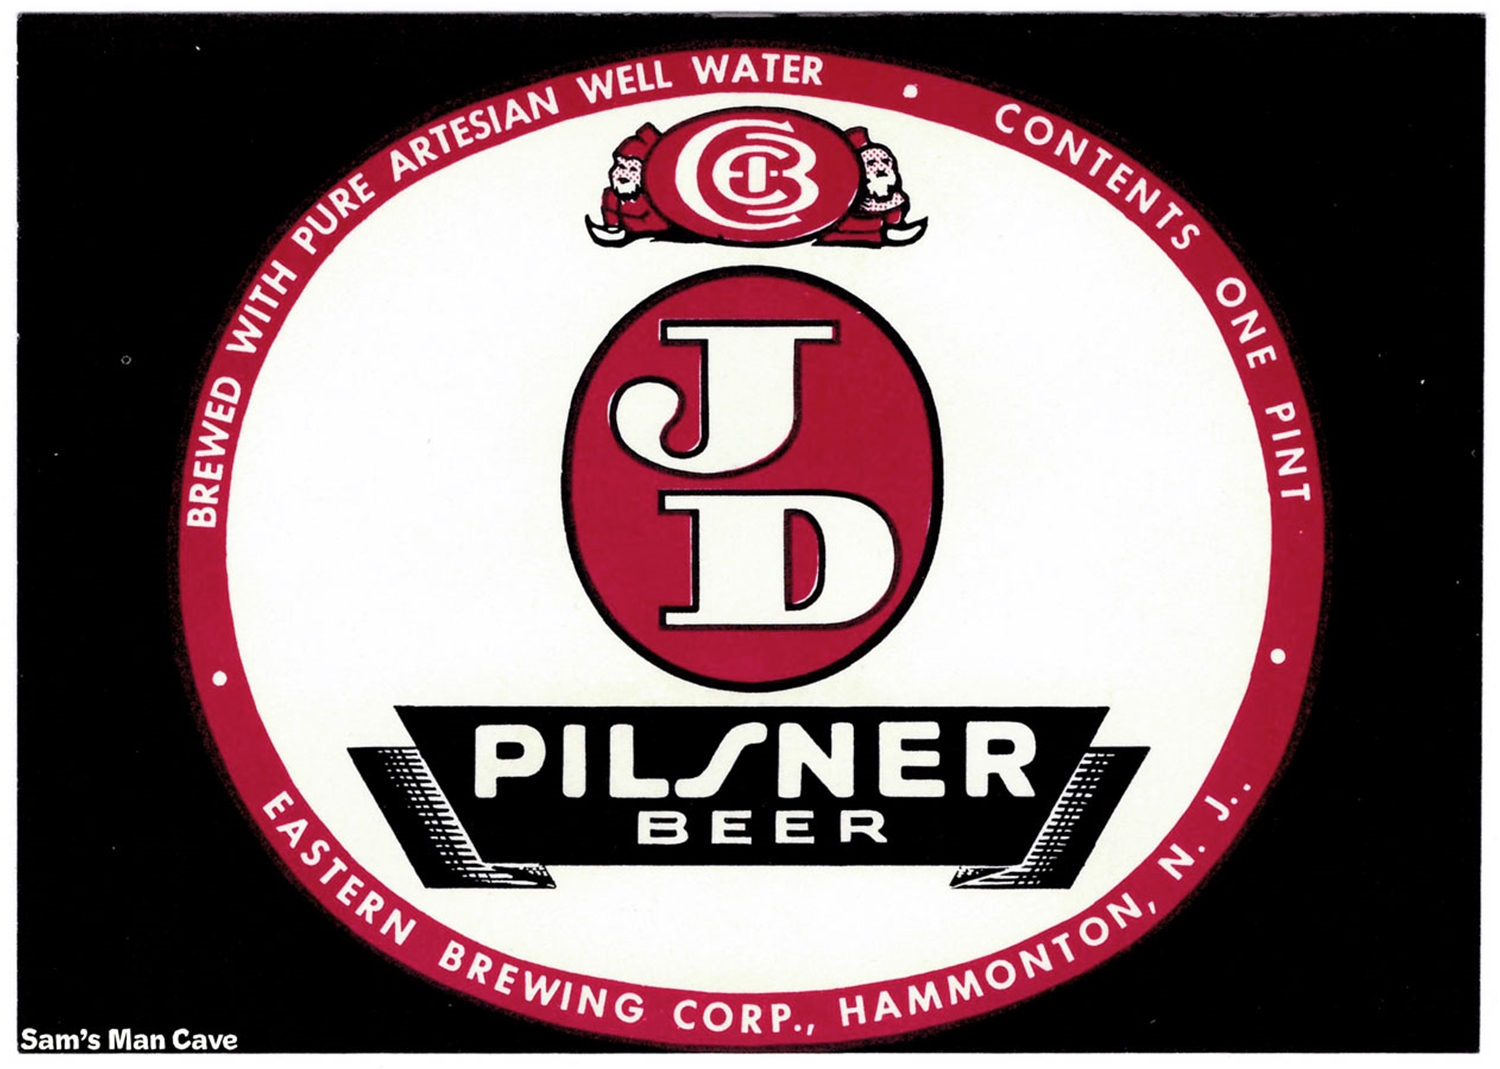 JD Pilsner Beer Label